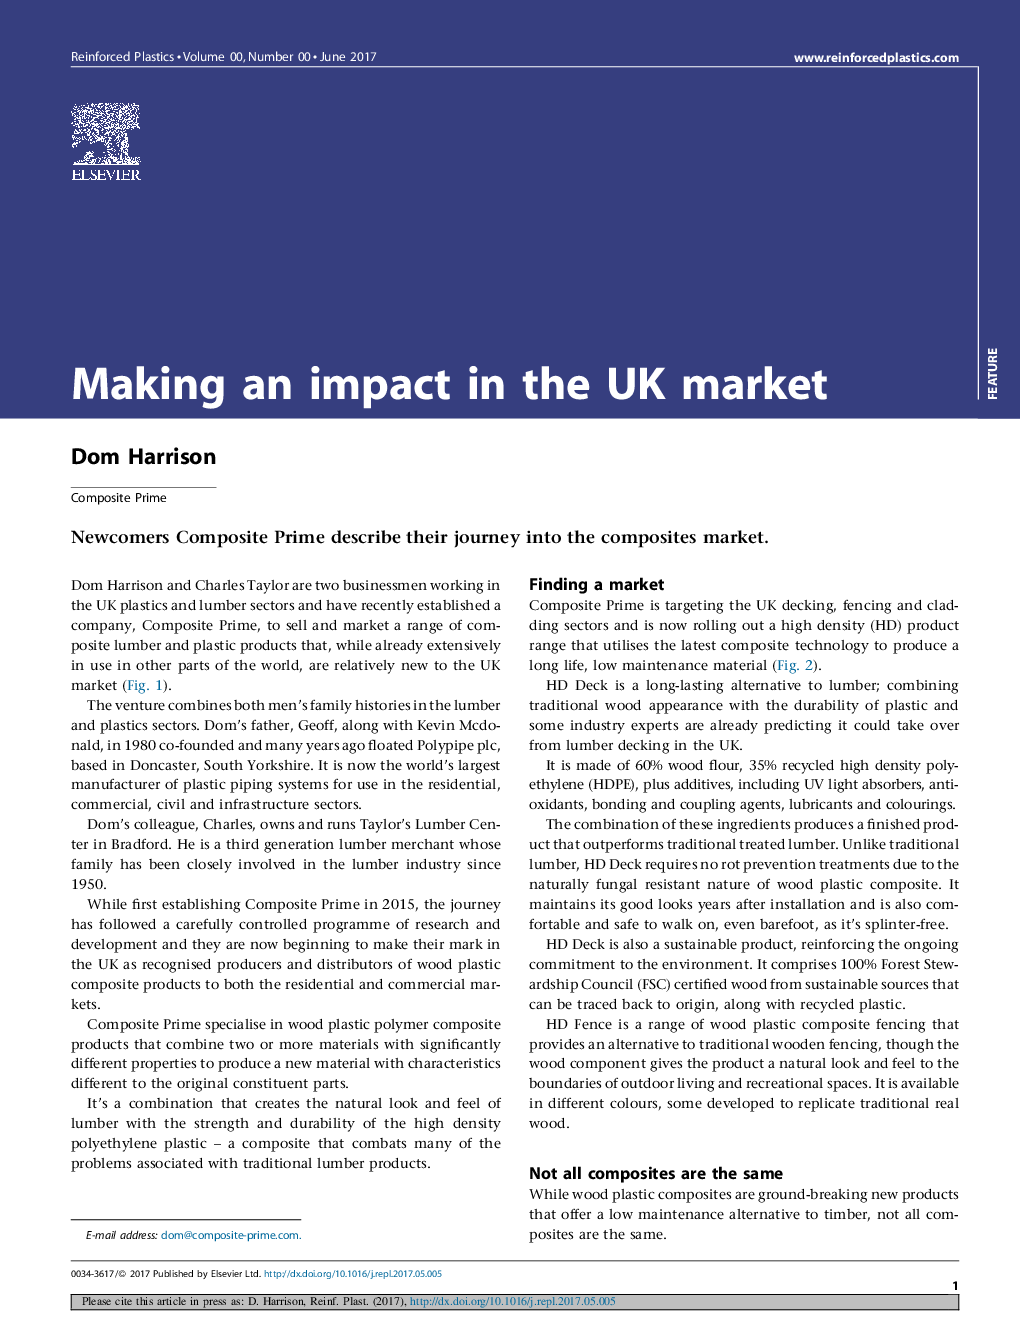 تأثیر در بازار انگلستان 